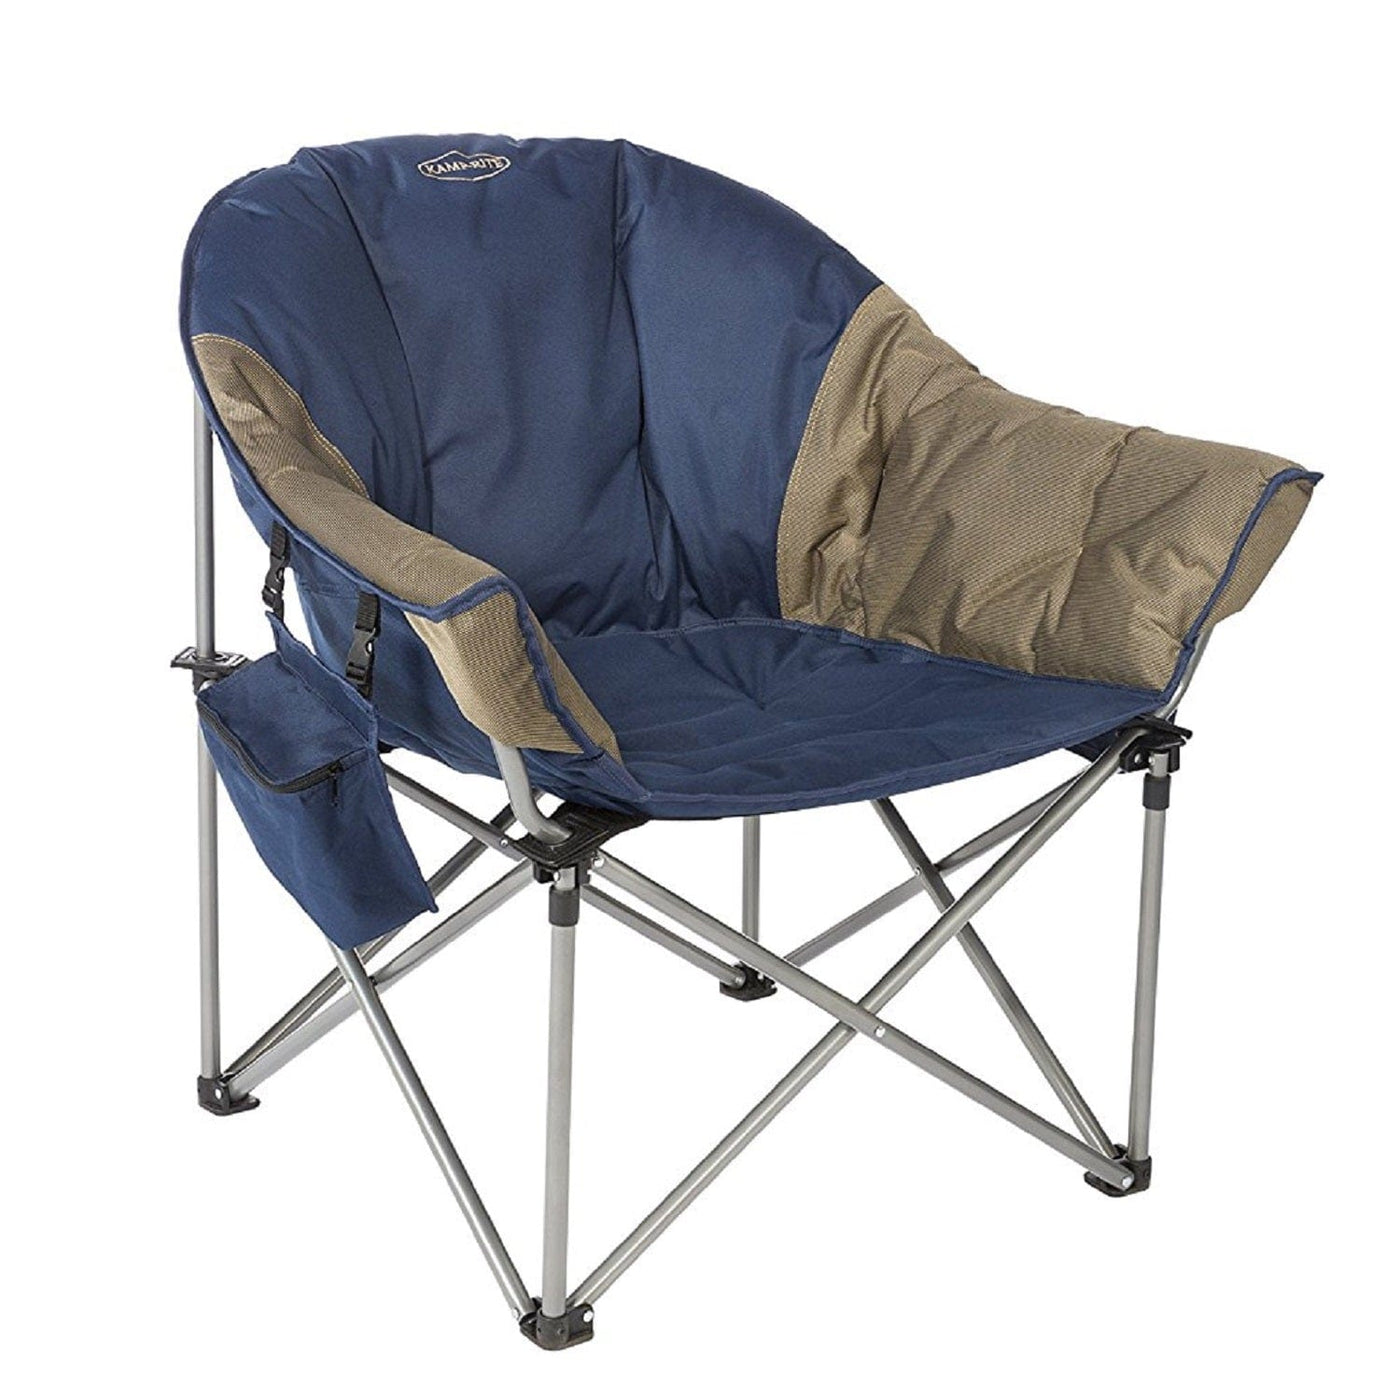 Kamp-Rite Kamp-Rite Kozy Klub Chair Camping And Outdoor